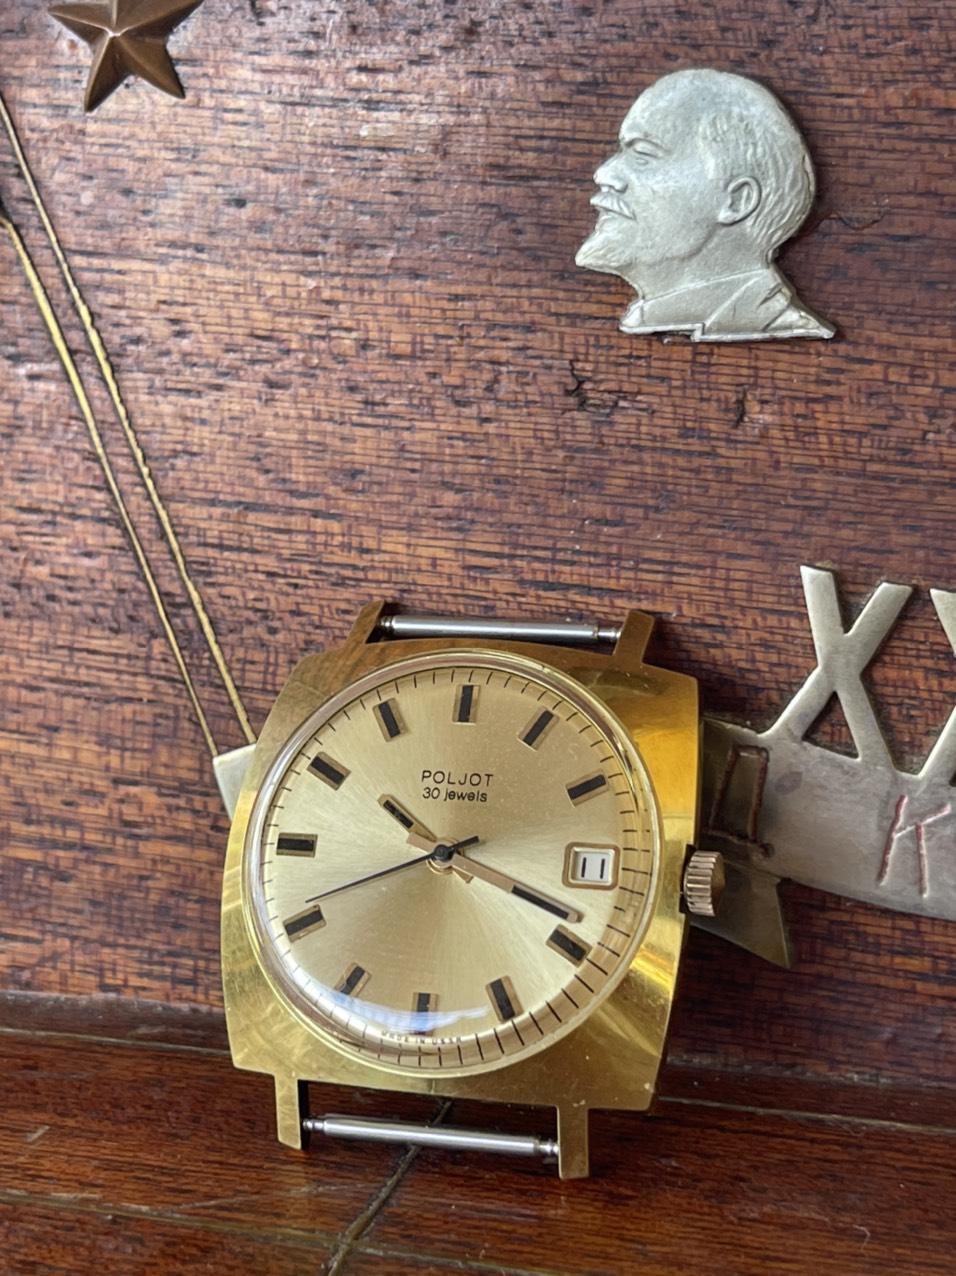 Đồng hồ nga vintage nguyên rin nguyên bản, hoạt động ổn định, đầy đủ sổ hộp, giá trị sưu tầm cao